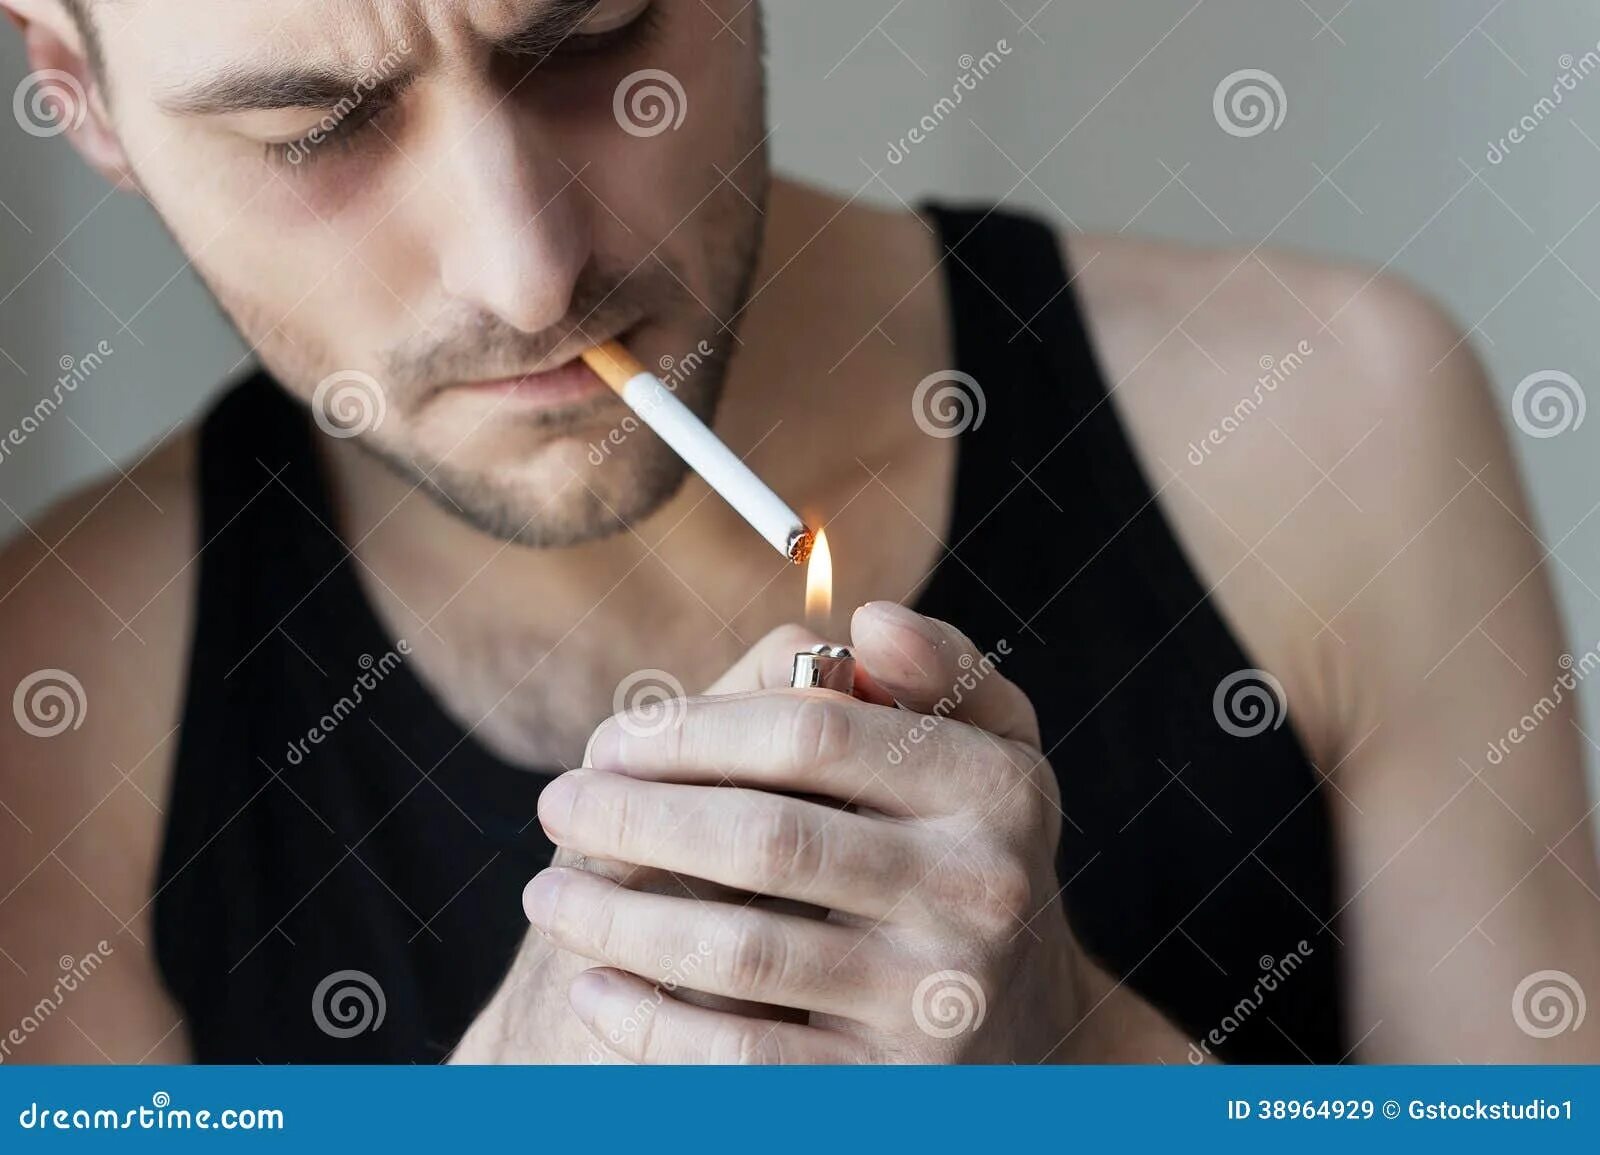 В носу запах сигаретного. Человек с огромной сигаретой. Большая сигарета. Мужчина прикуривает сигарету рисунок. Человек закуривает сигарету референс.